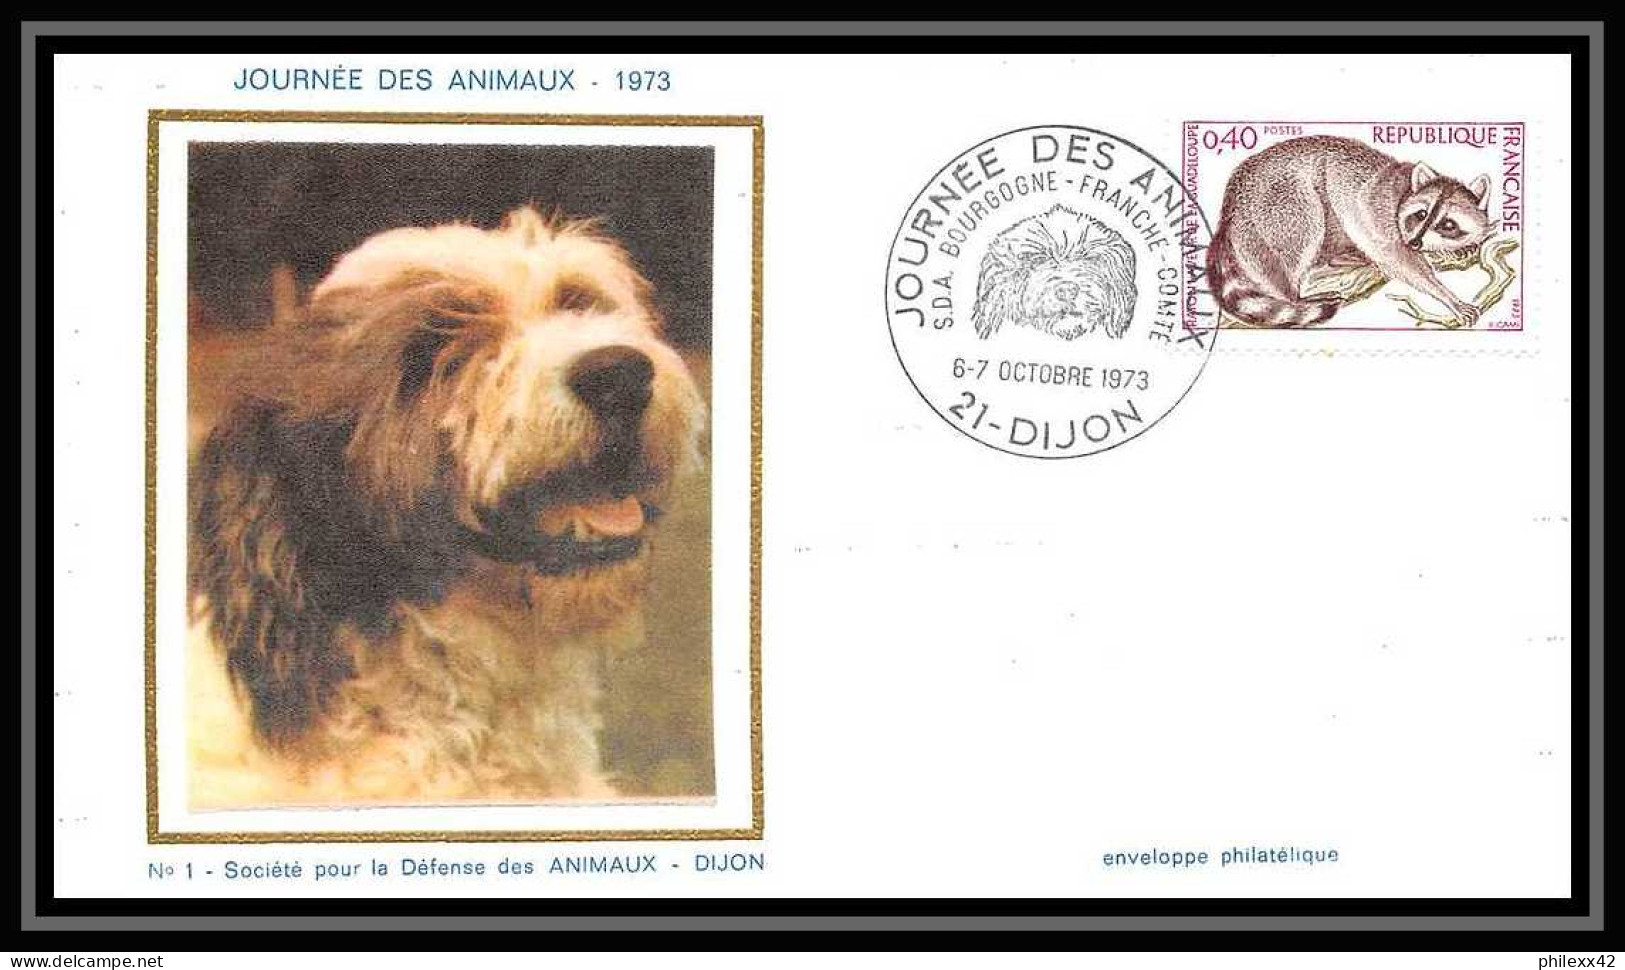 2821/ Carte maximum (card) lot de 4 documents différents France N°1754 Raton laveur de la Guadeloupe 